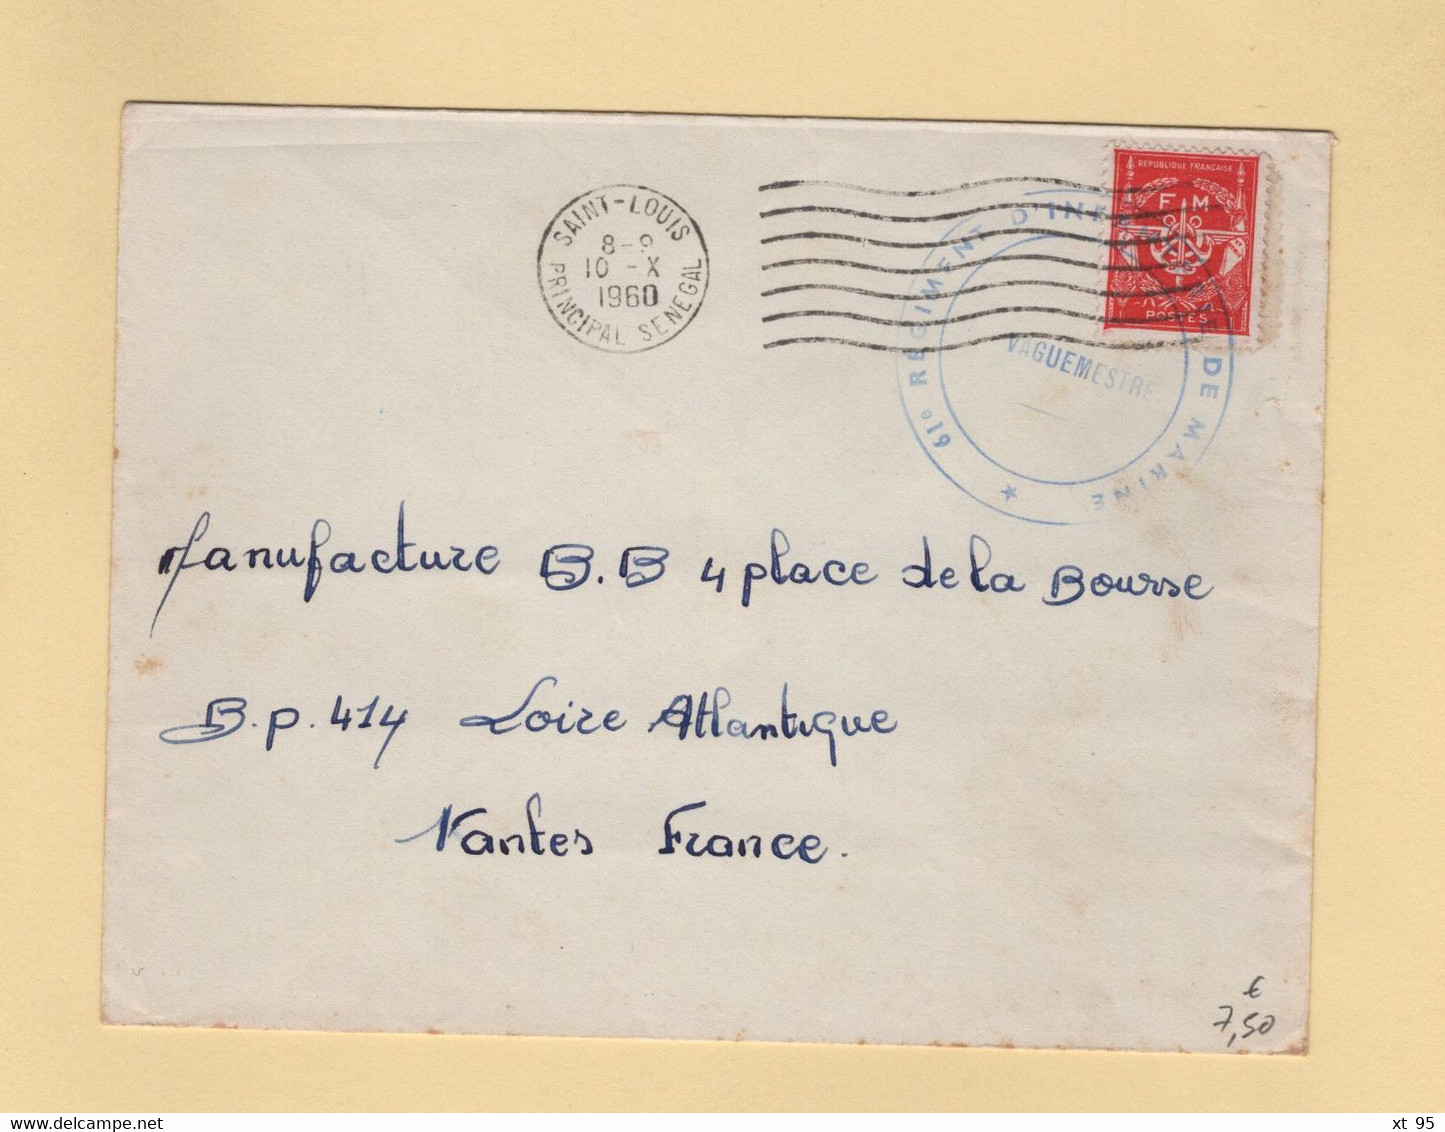 Timbre FM - Saint Louis - Senegal - 1960 - 61e Regiment D Infanterie De Marine - Timbres De Franchise Militaire